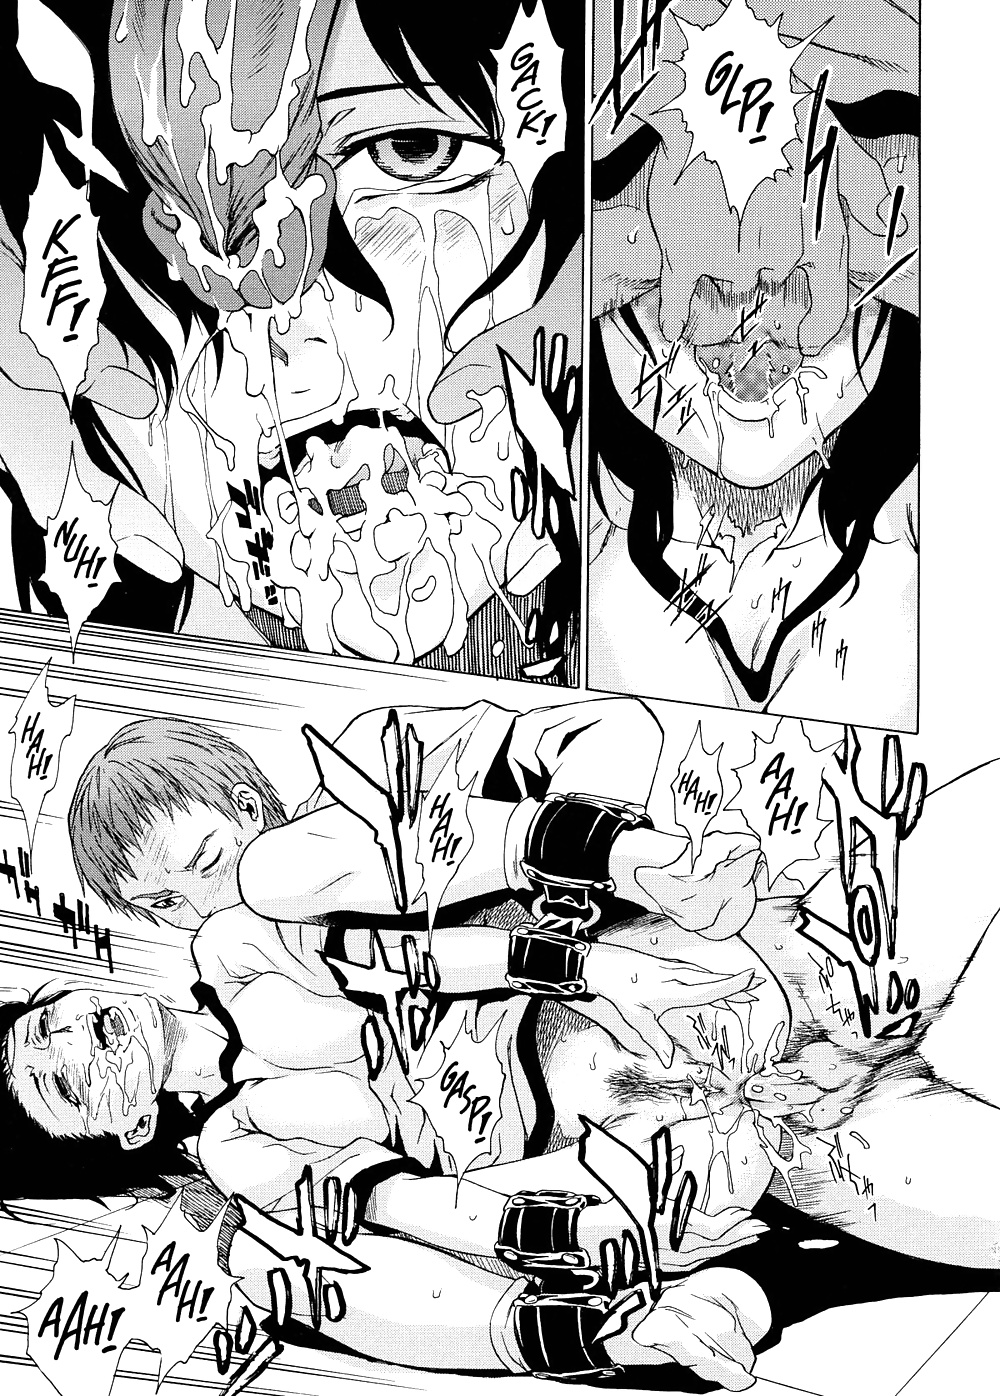 Domin-8 Me ( Take On me ) Hentai Manga Part 2 (70/98)